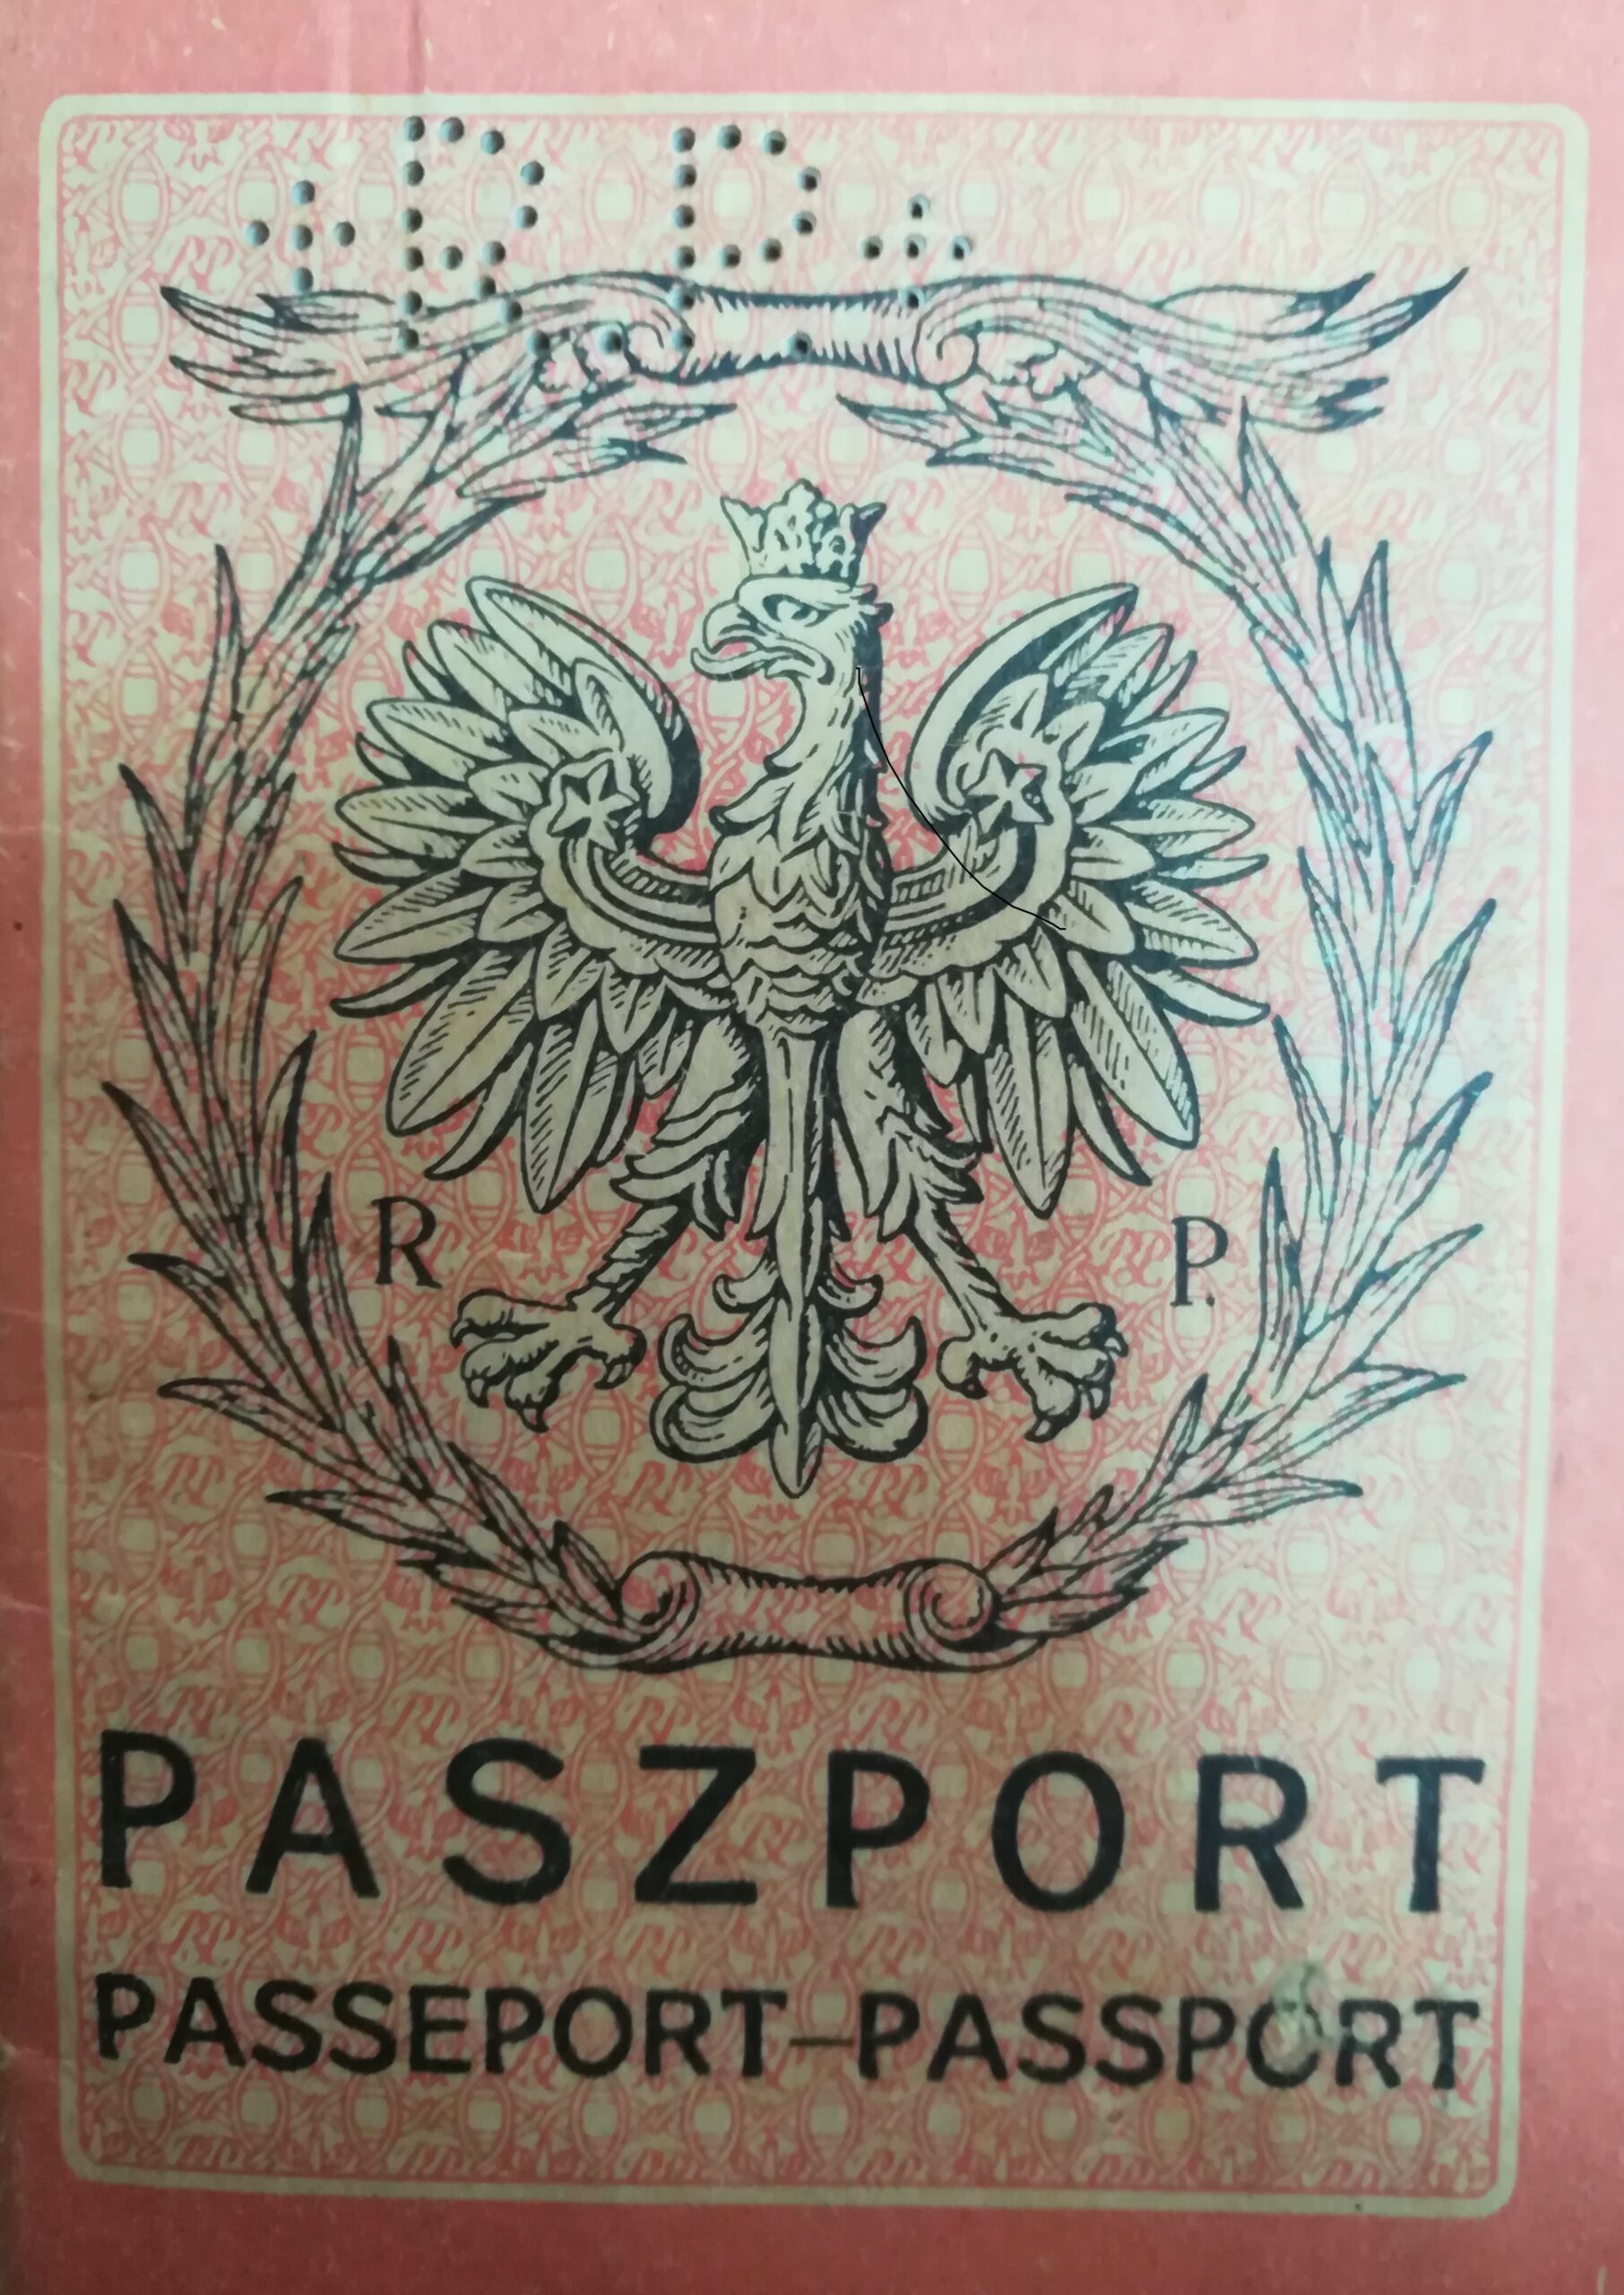 Paszporty okresu międzywojennego, Wołyń. Zdjęcia